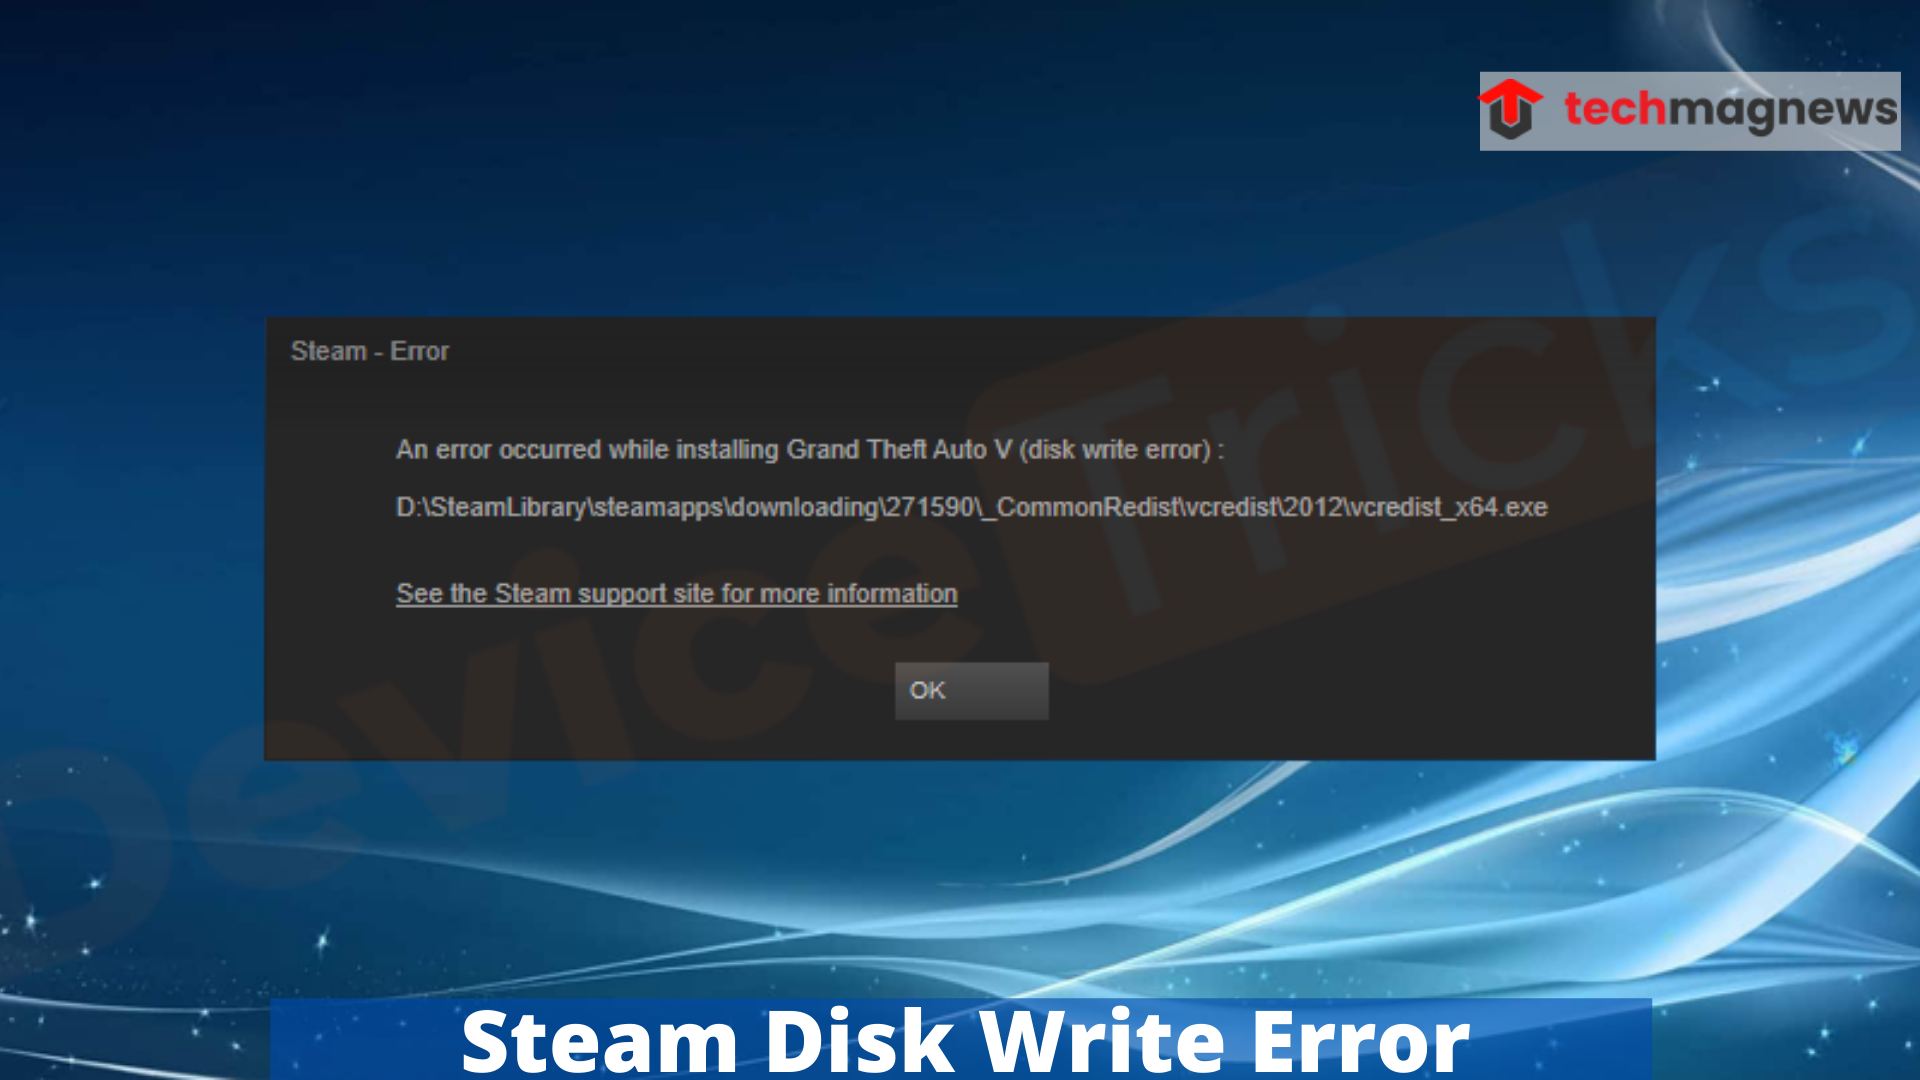 steam disk write error